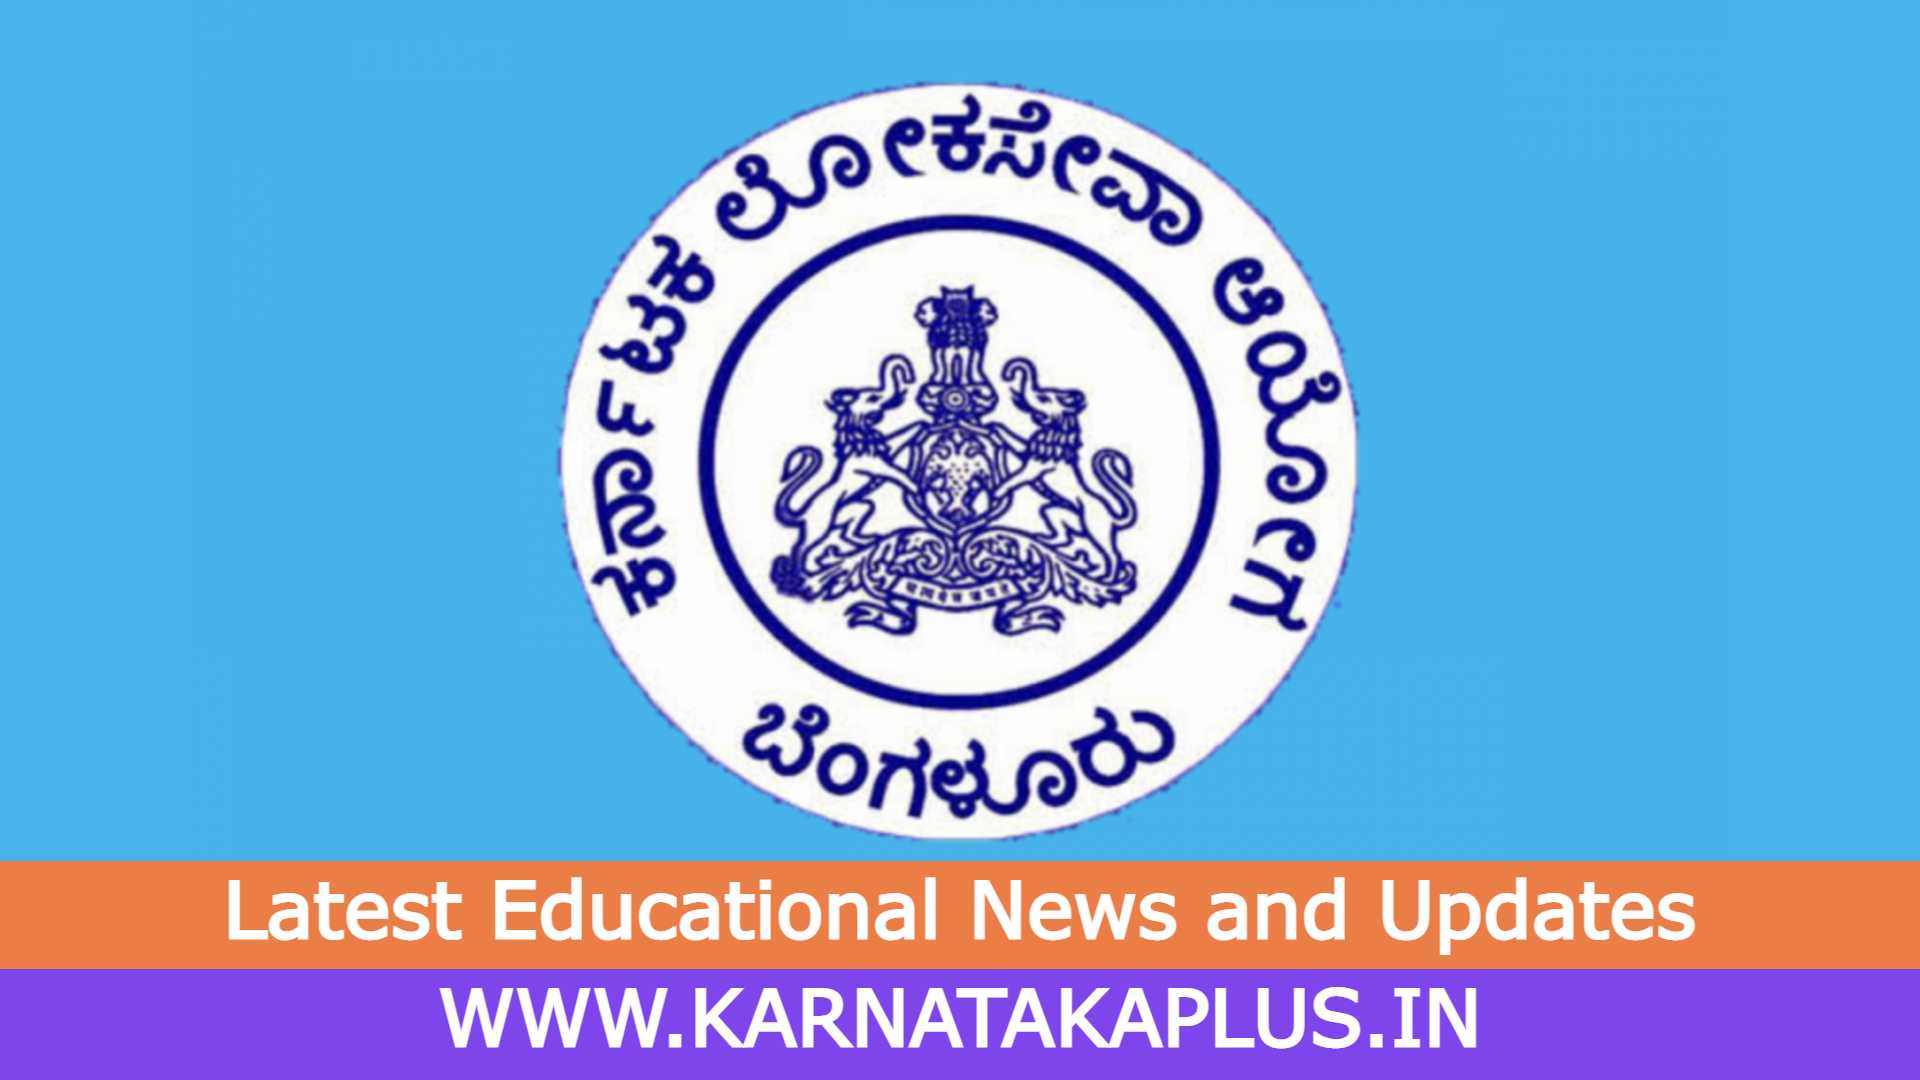 Karnataka Plus 3 KPSC Latest News